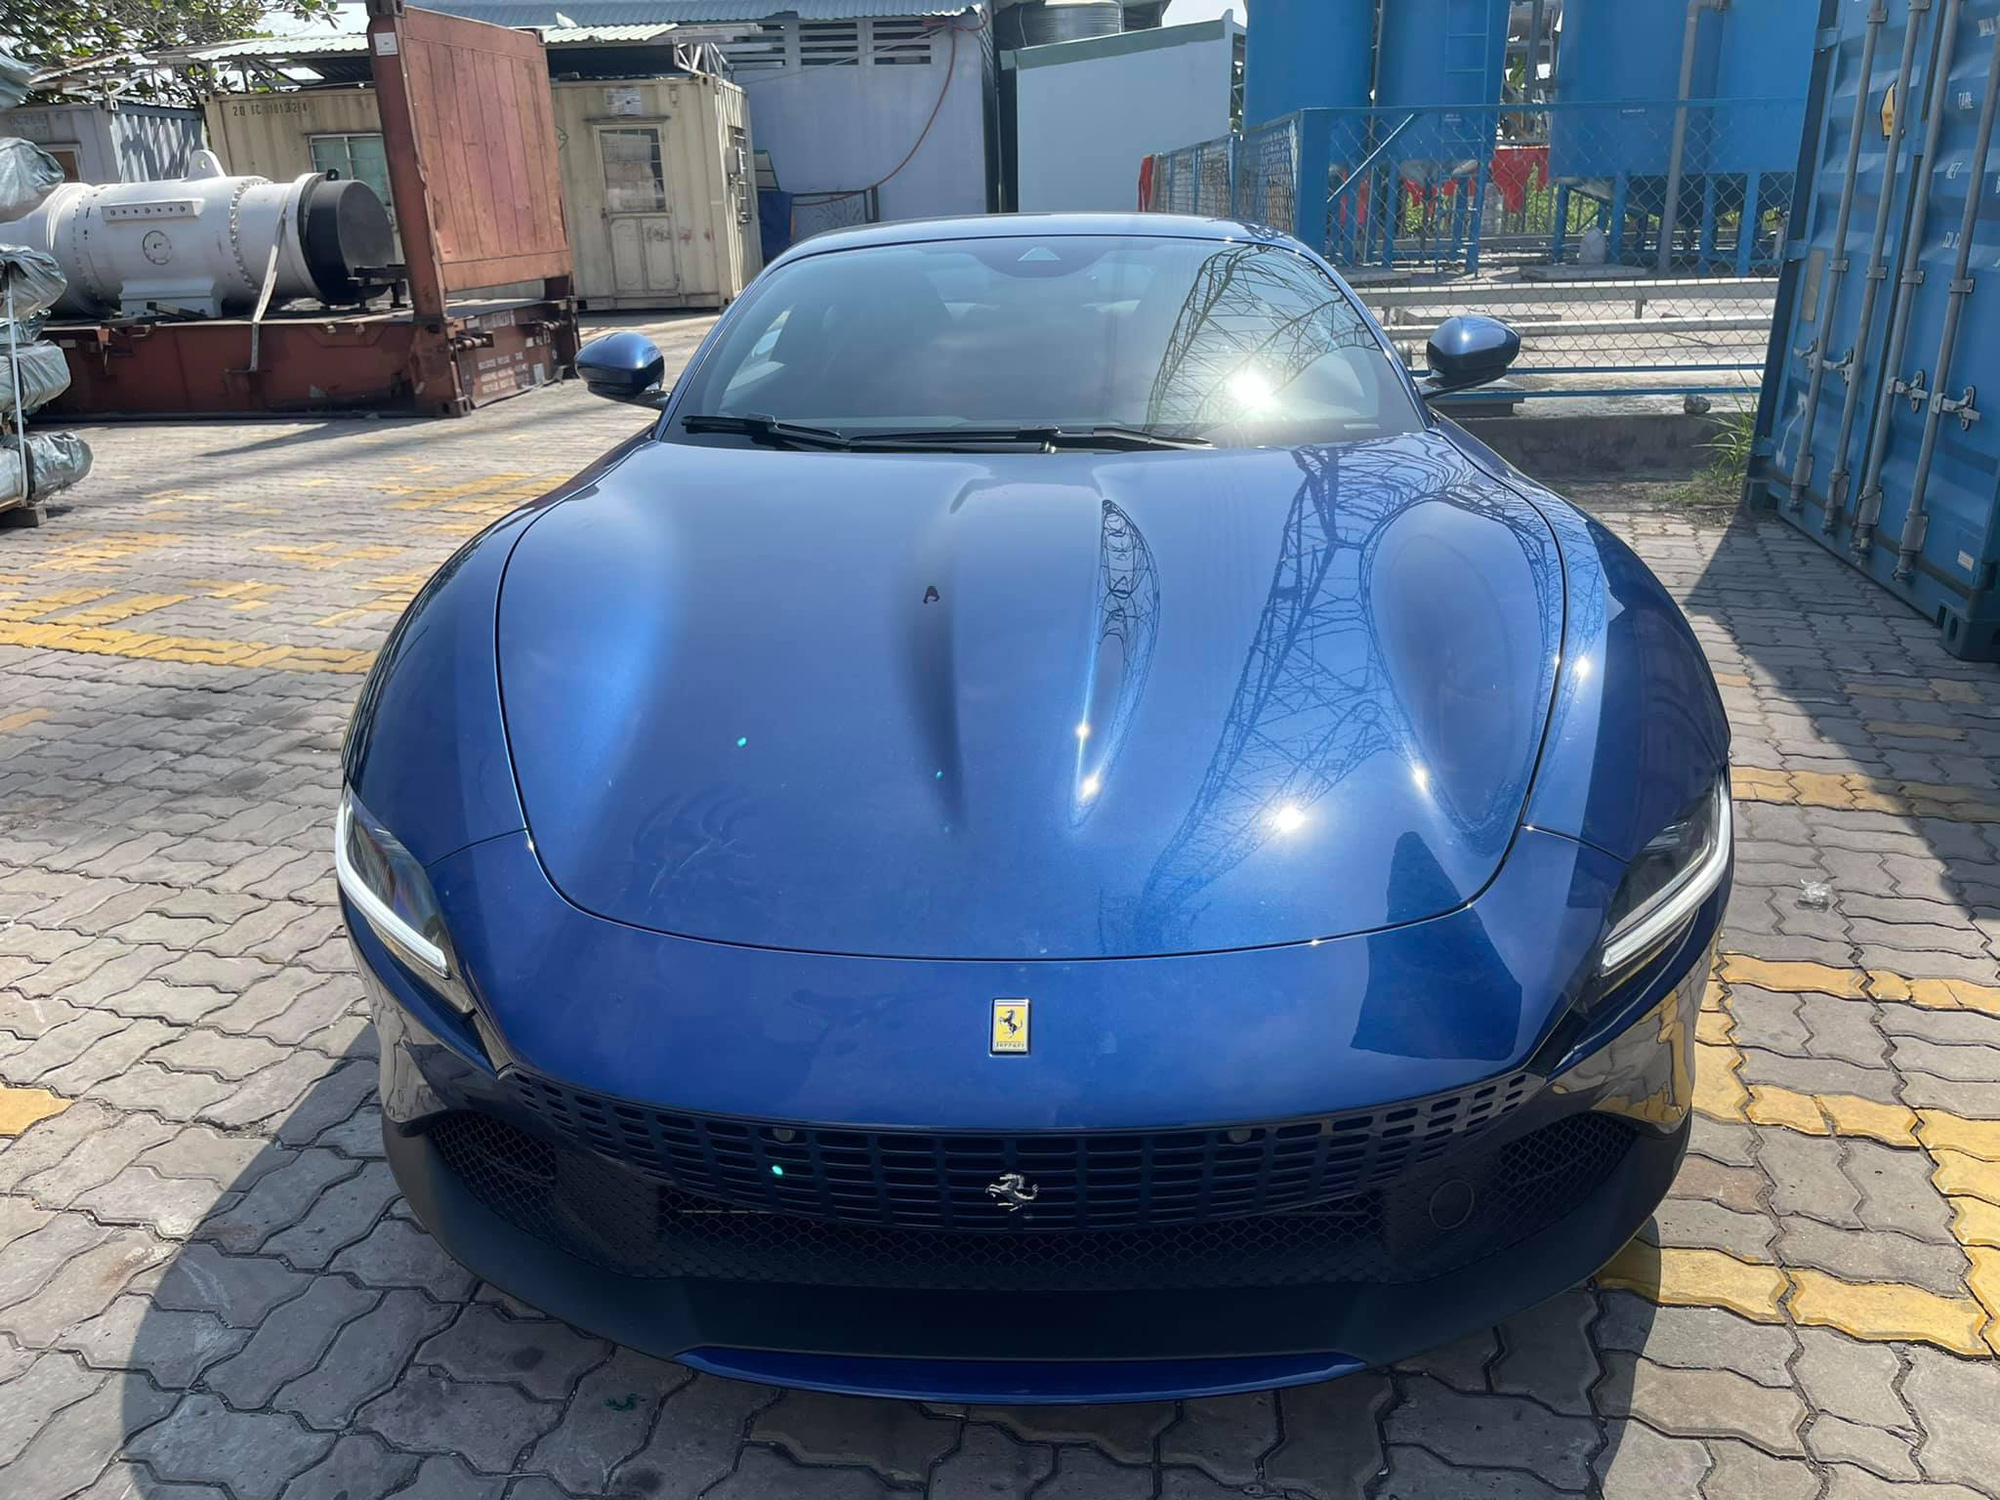 Khui công Ferrari Roma đầu tiên Việt Nam: Siêu xe 4 chỗ lạ lẫm giá khoảng 20 tỷ đồng cho đại gia chơi Tết - Ảnh 1.